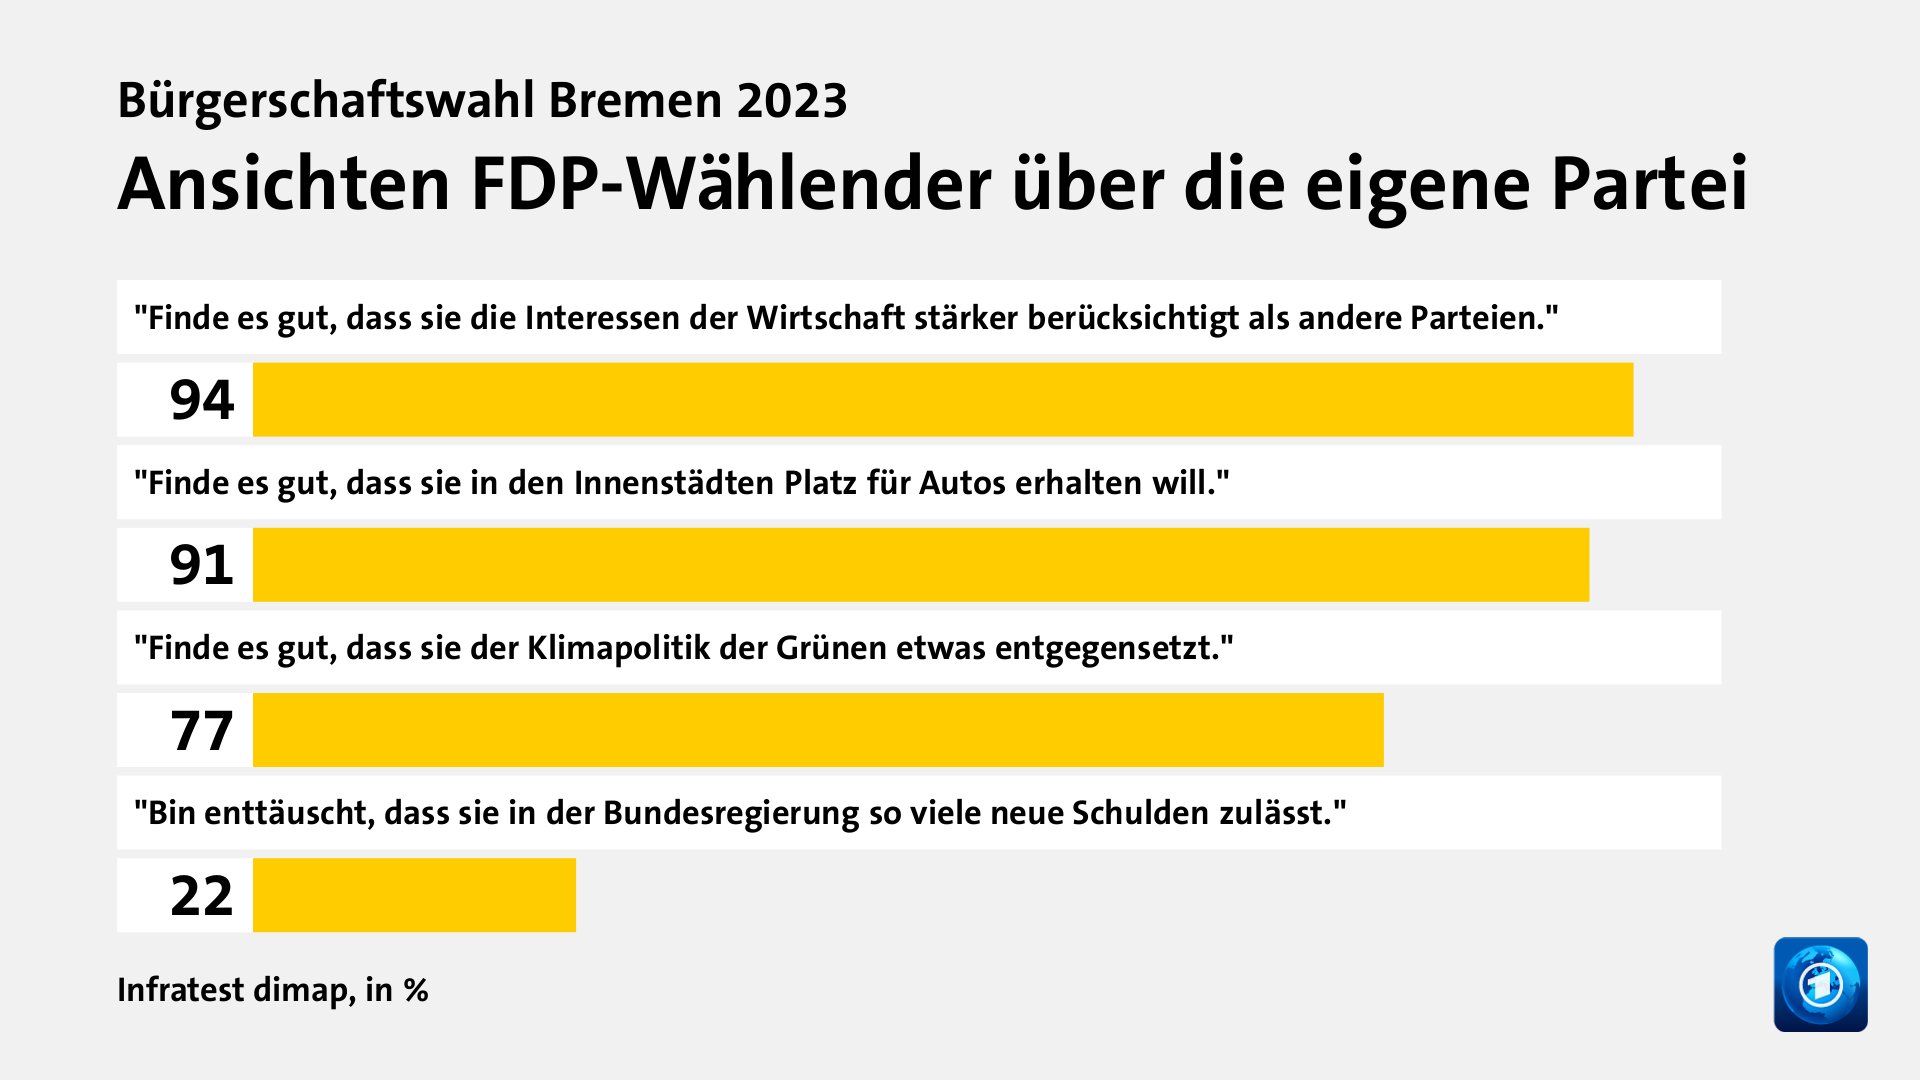 Ansichten FDP-Wählender über die eigene Partei, in %: 